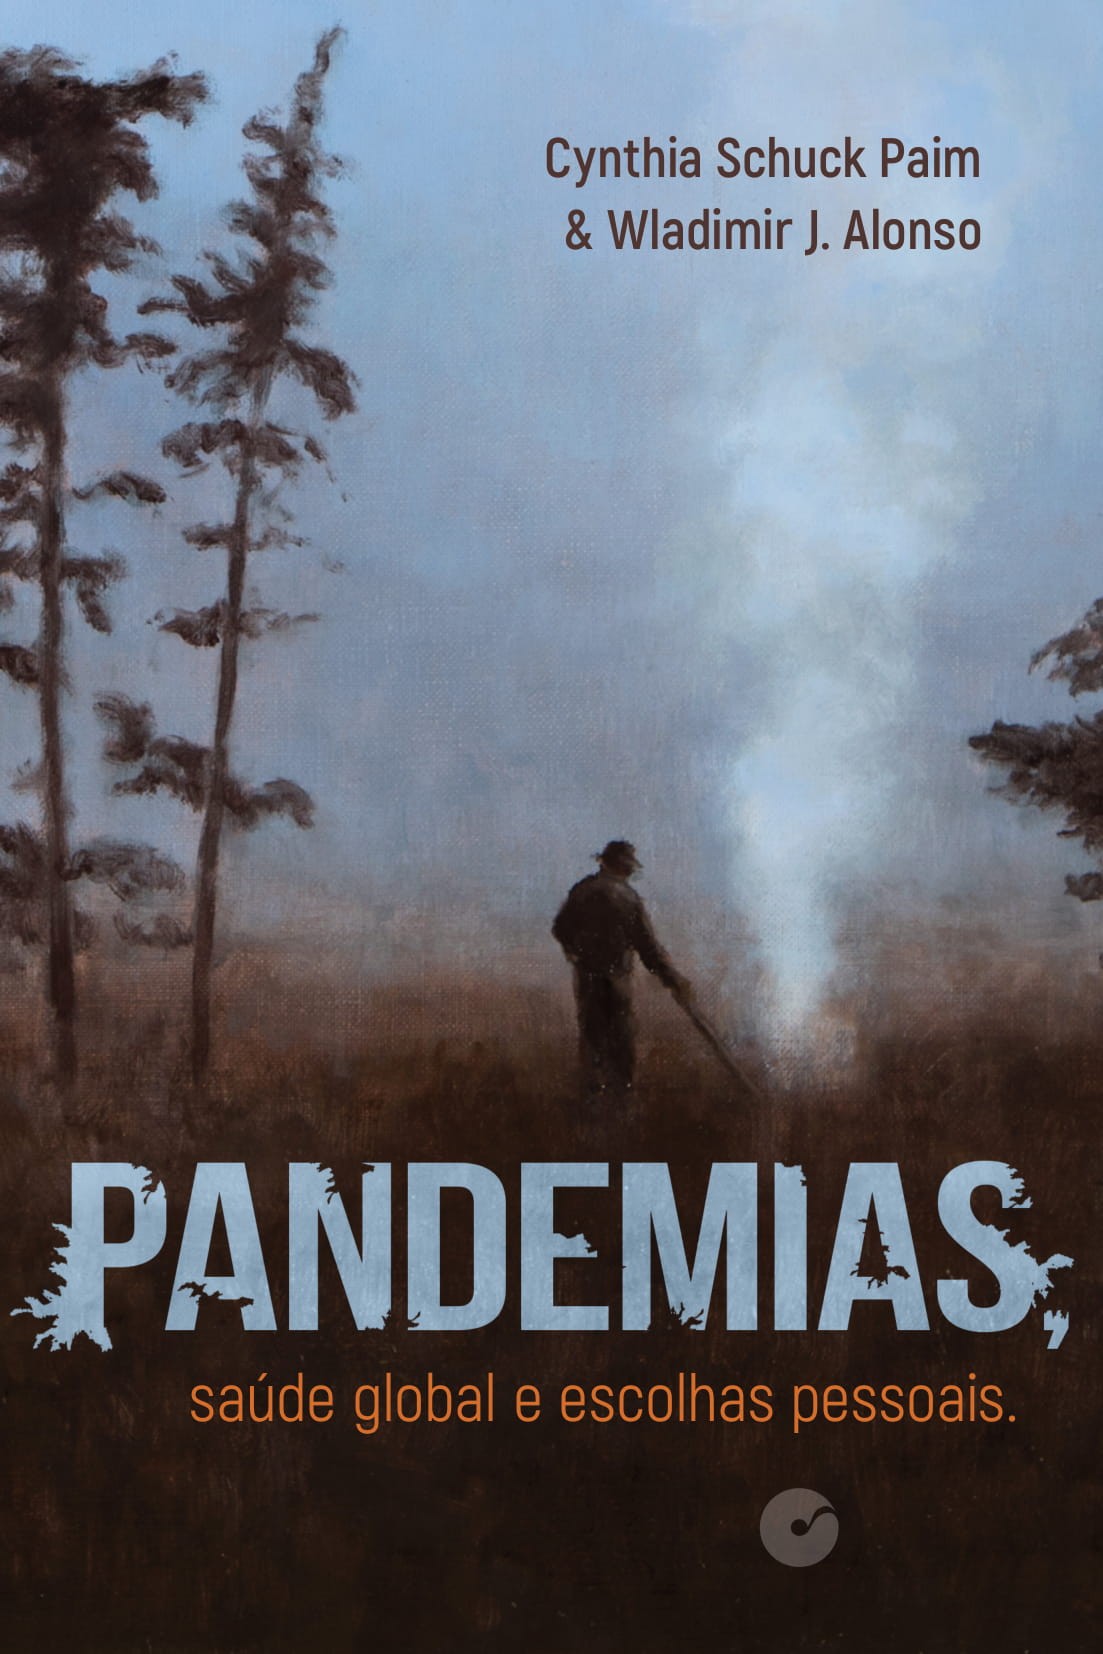 Capa do livro Pandemias, saúde global e escolhas pessoais (Foto: Divulgação)